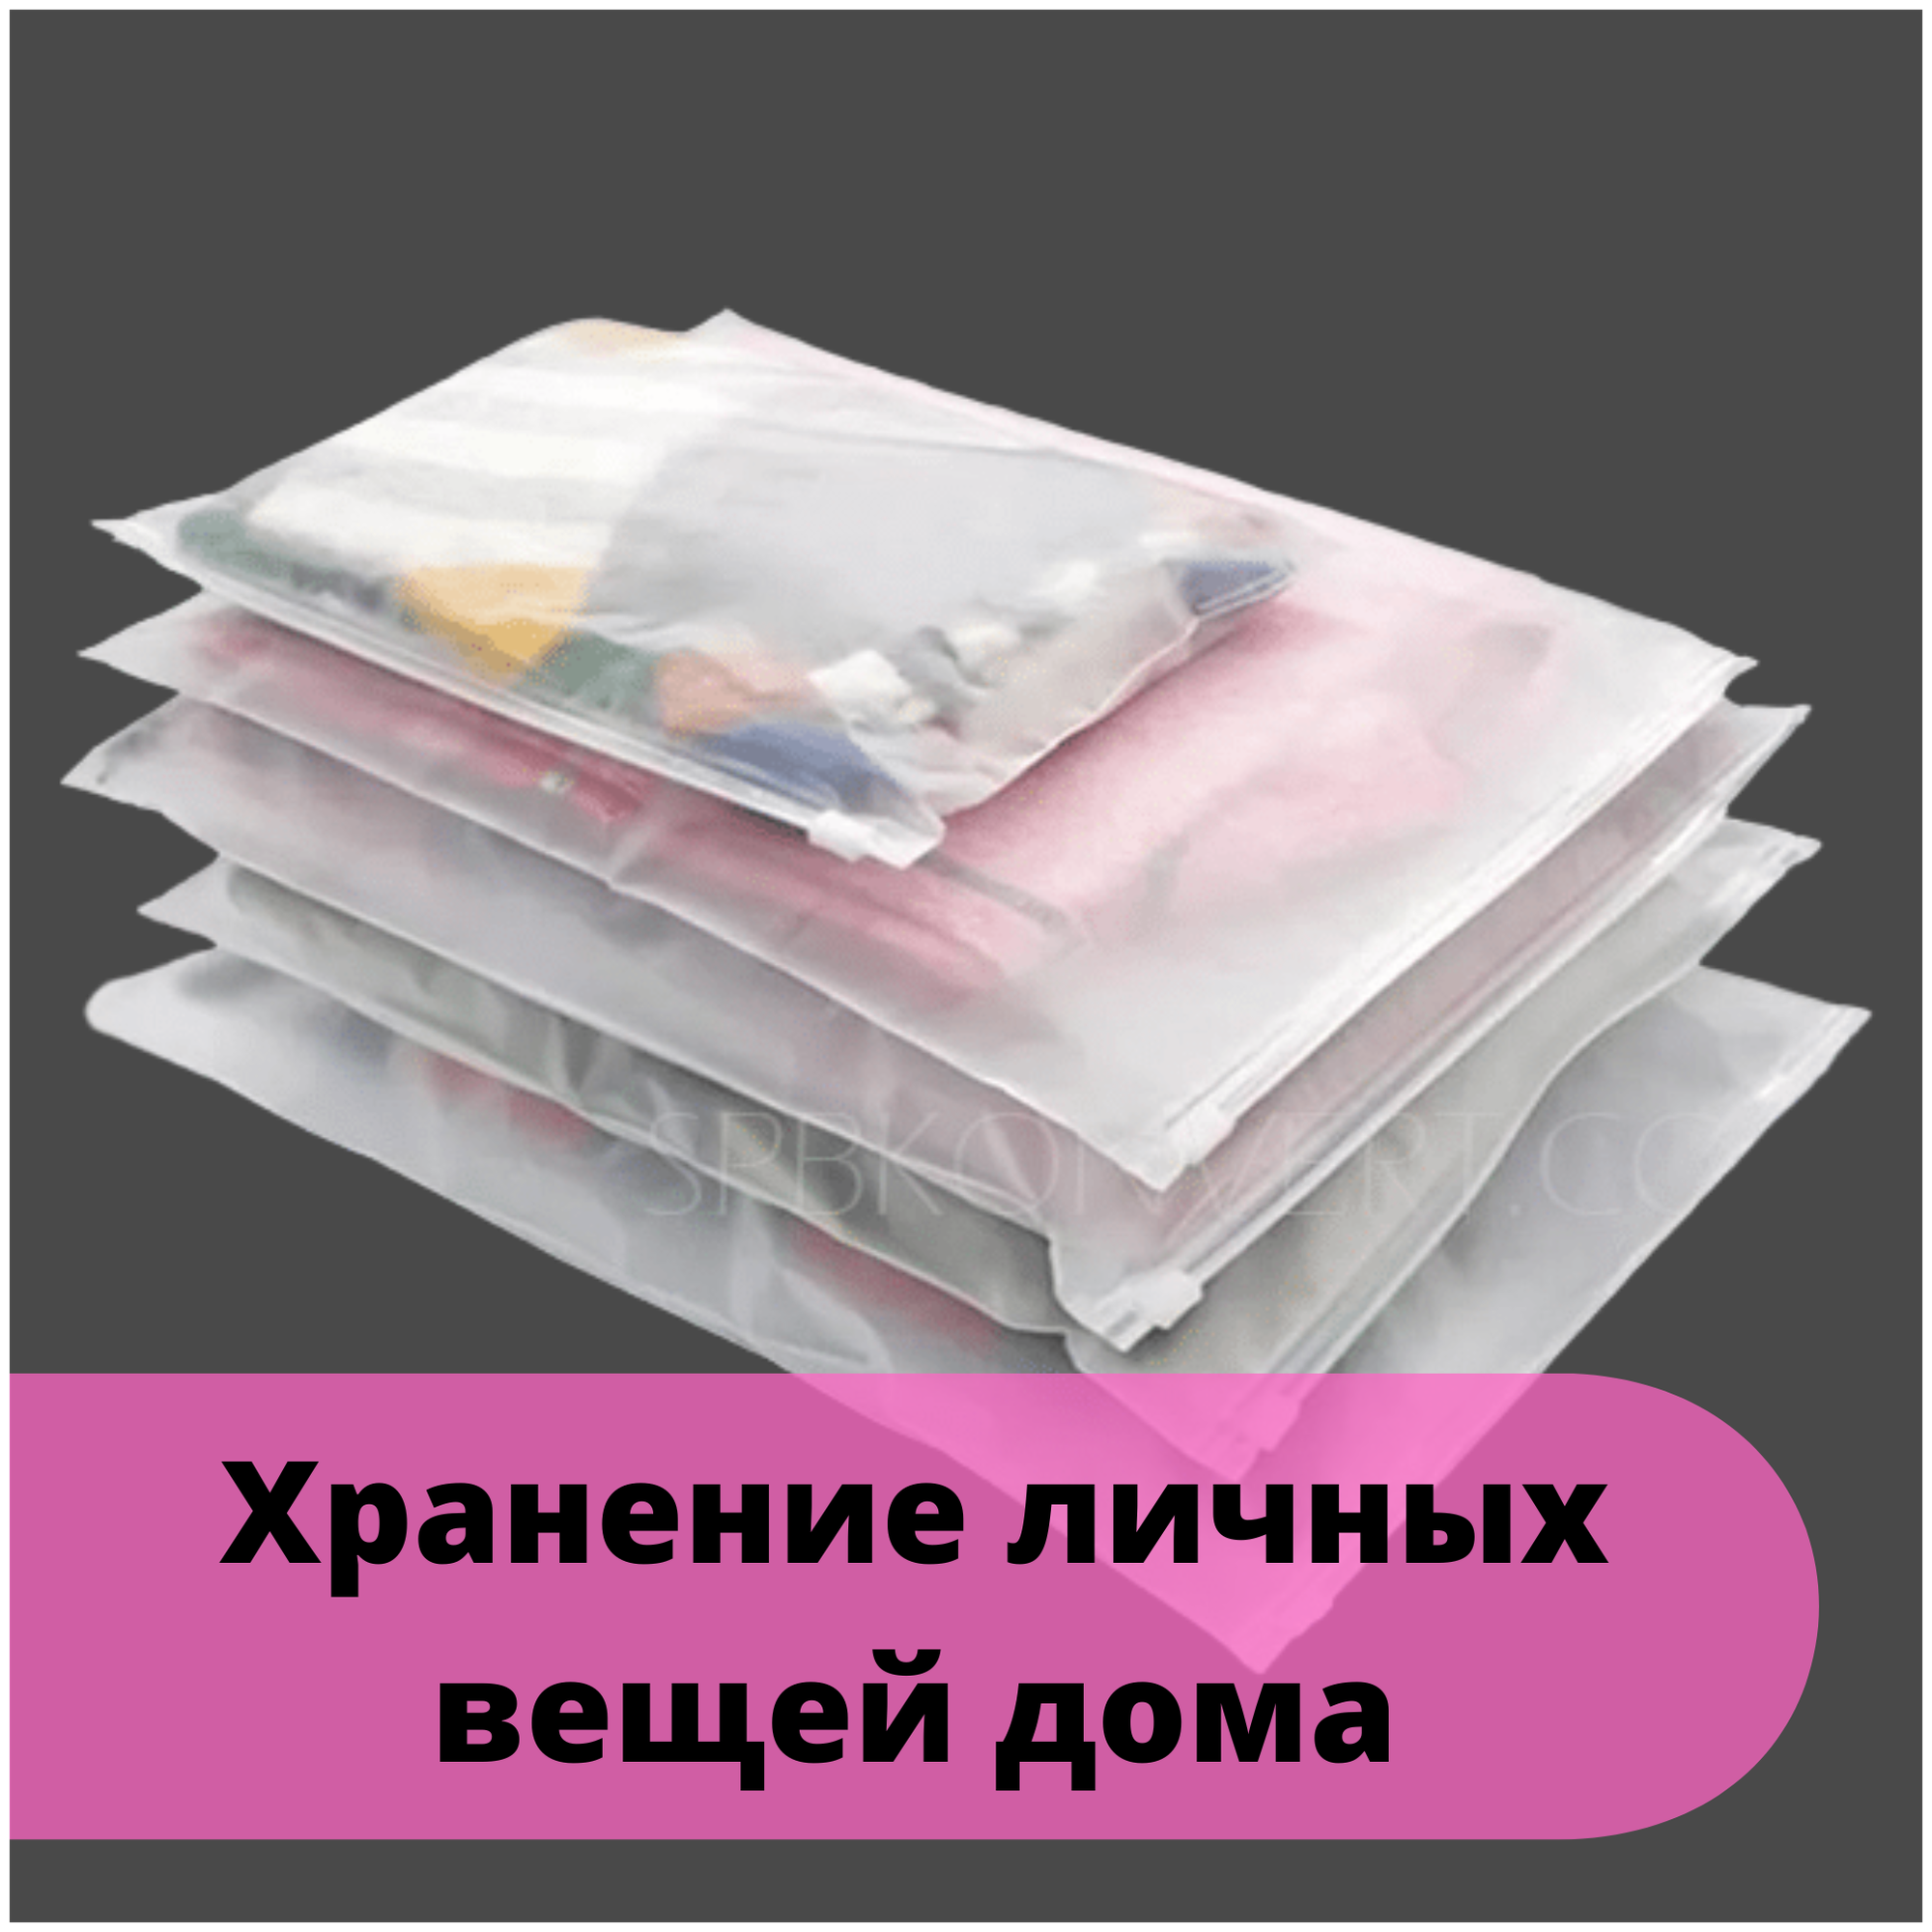 Зип пакеты 20 х 30 см, 30 штук / Упаковочные Zip пакеты для одежды / матовые пакеты для упаковки / хранения вещей / маркетплейсов / с бегунком - фотография № 7